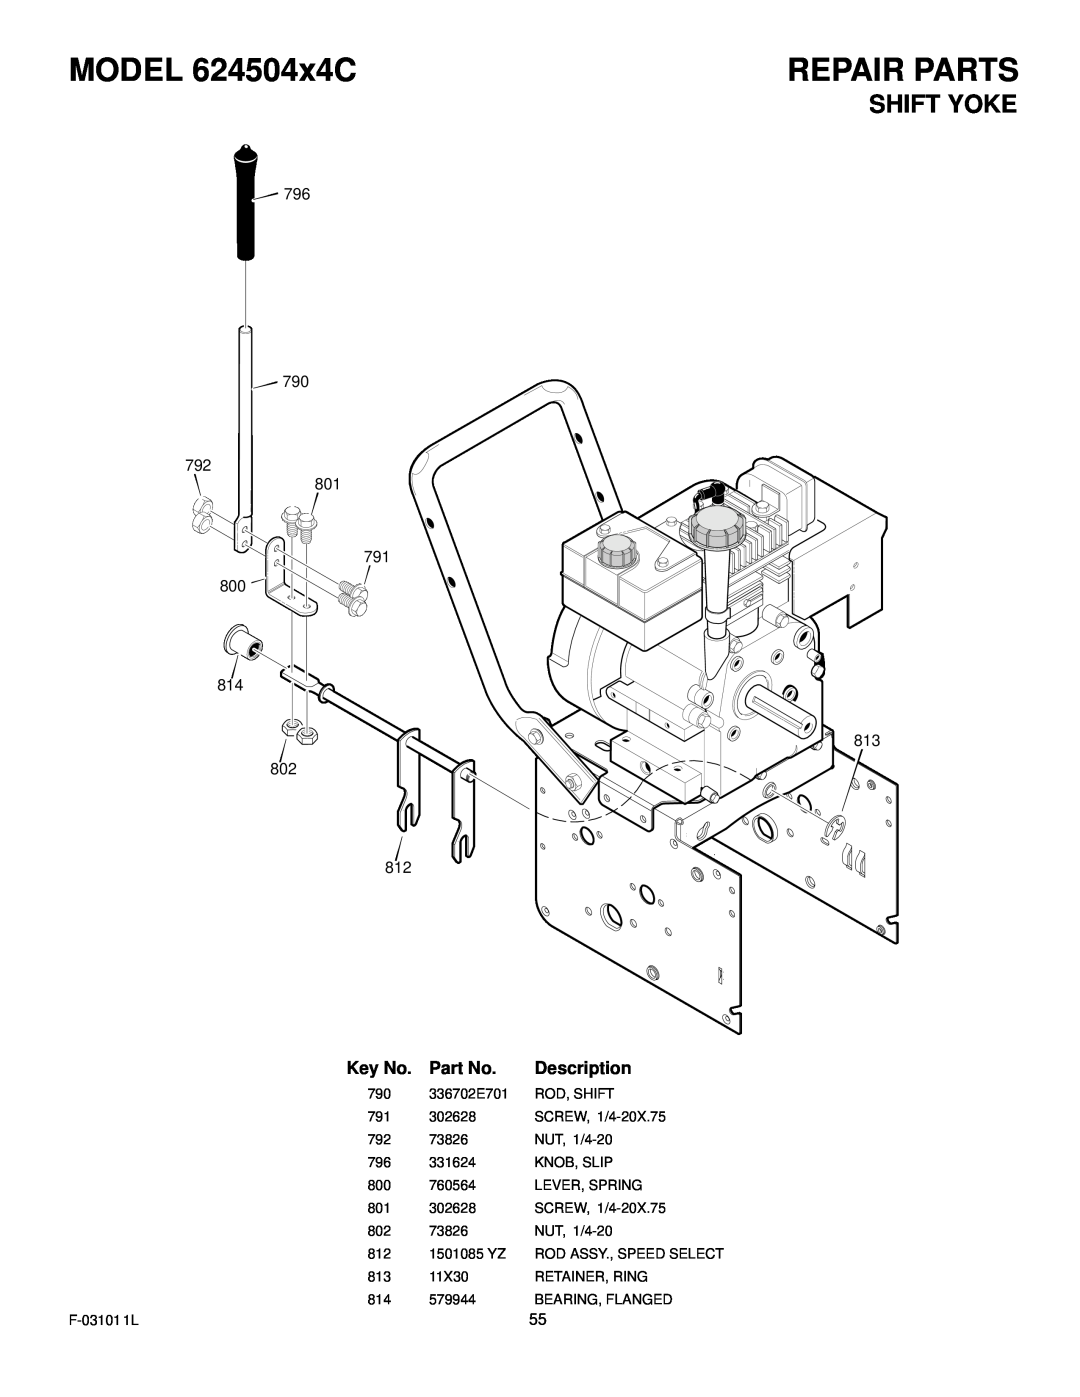 Murray manual MODEL 624504x4C, Repair Parts, Shift Yoke, Description 